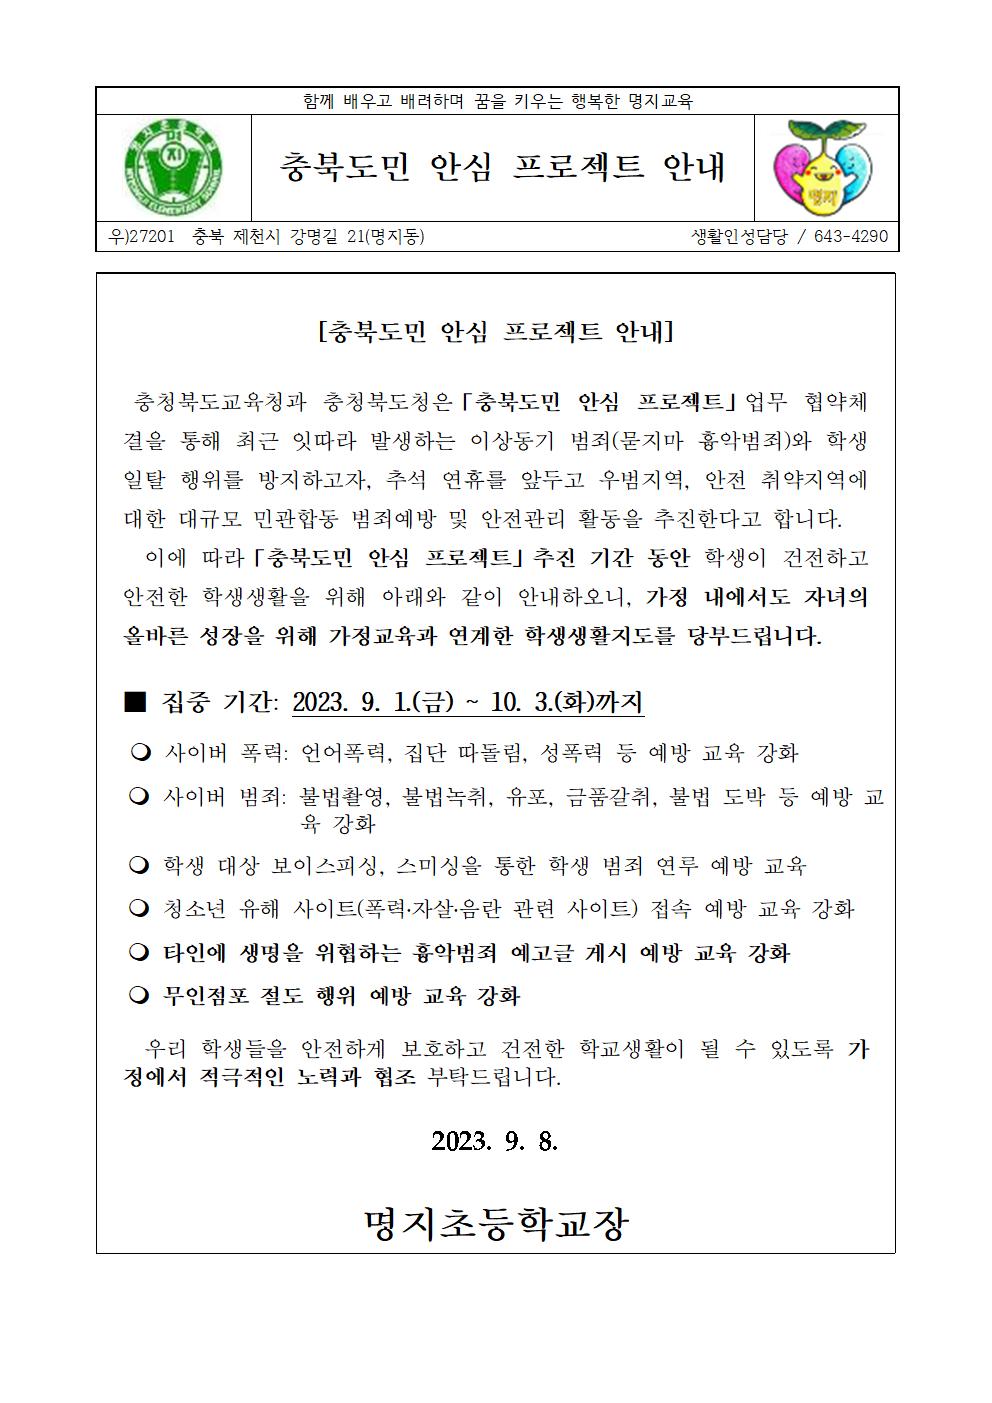 충북도민 안심 프로젝트 안내 가정통신문001